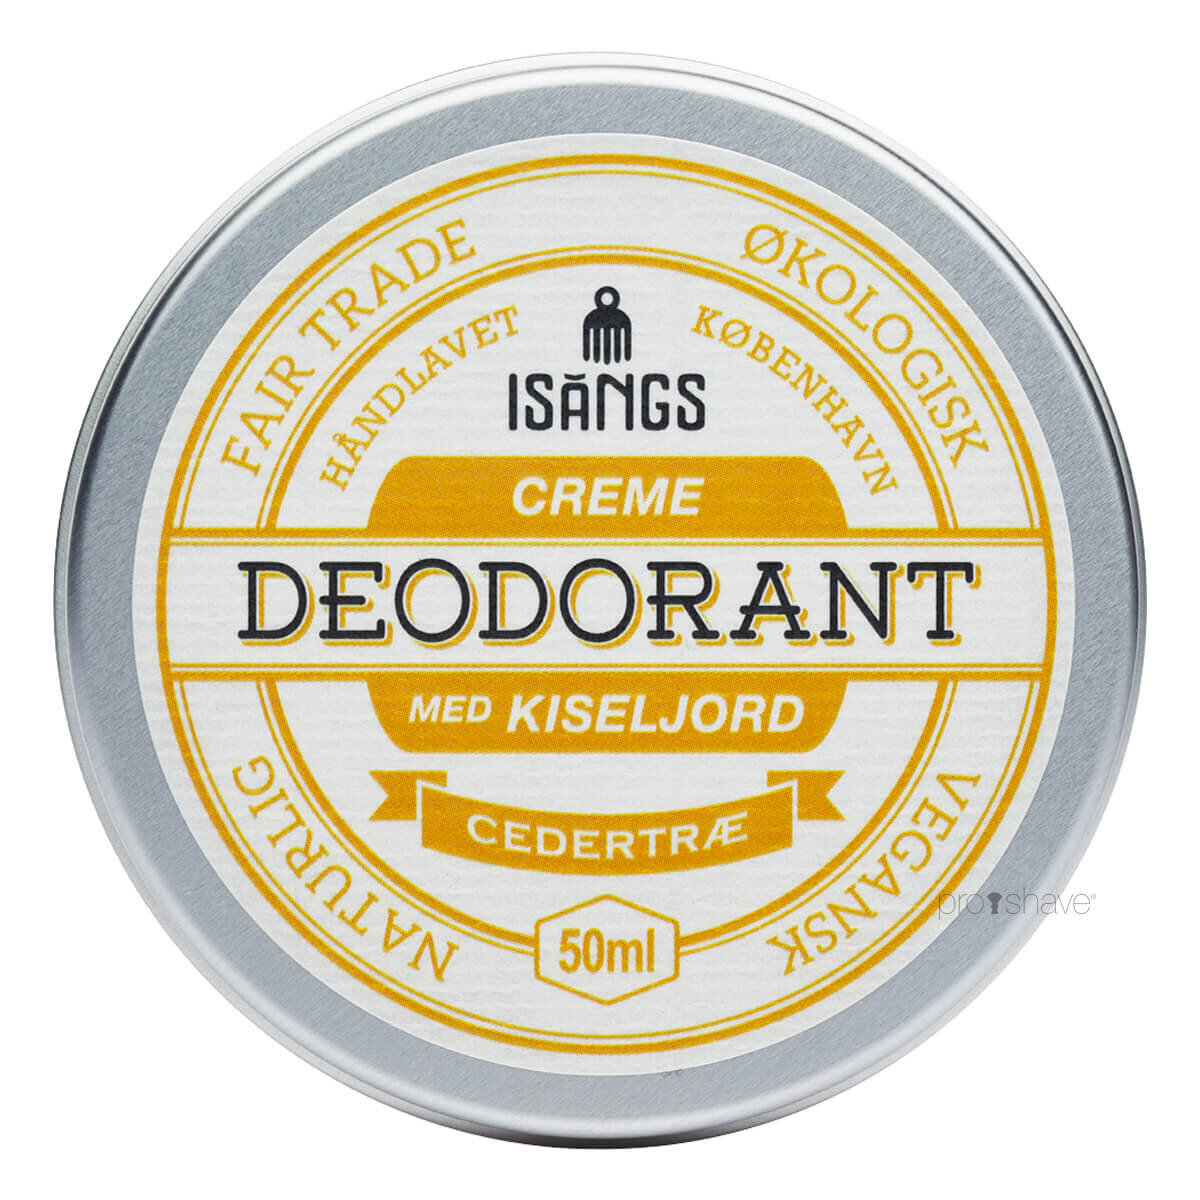 Se Isangs Creme Deodorant med Kiseljord, Cedertræ, 50 ml. hos Proshave